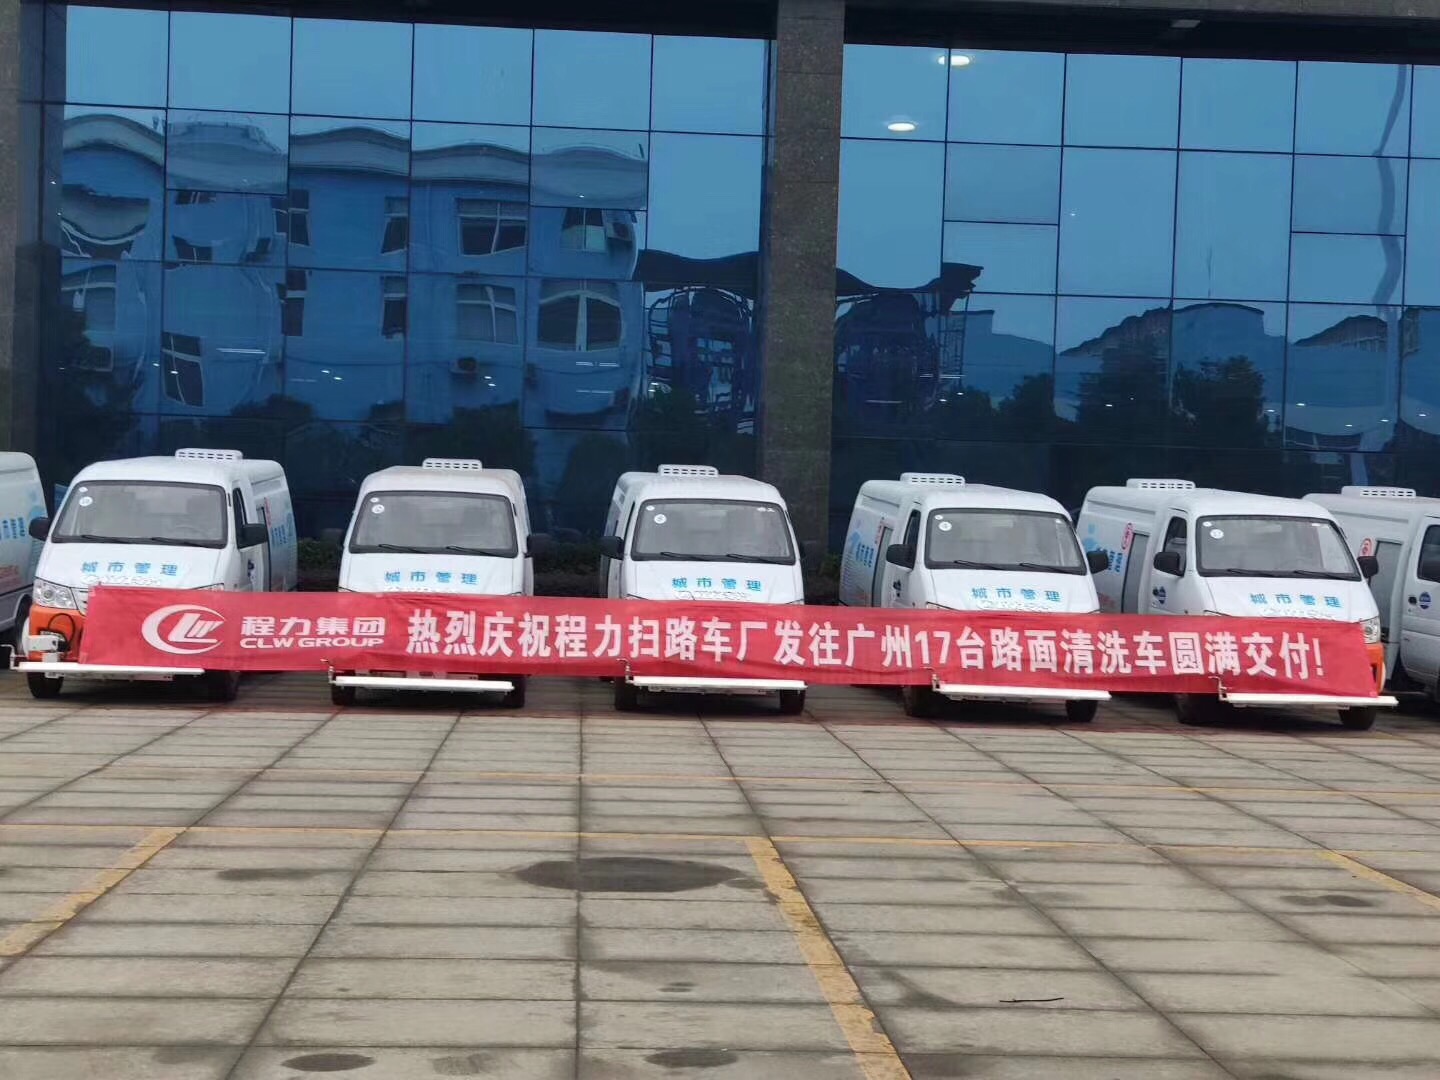 喜訊：熱烈祝賀程力掃路車廠發往廣州的17臺清洗車圓滿交付